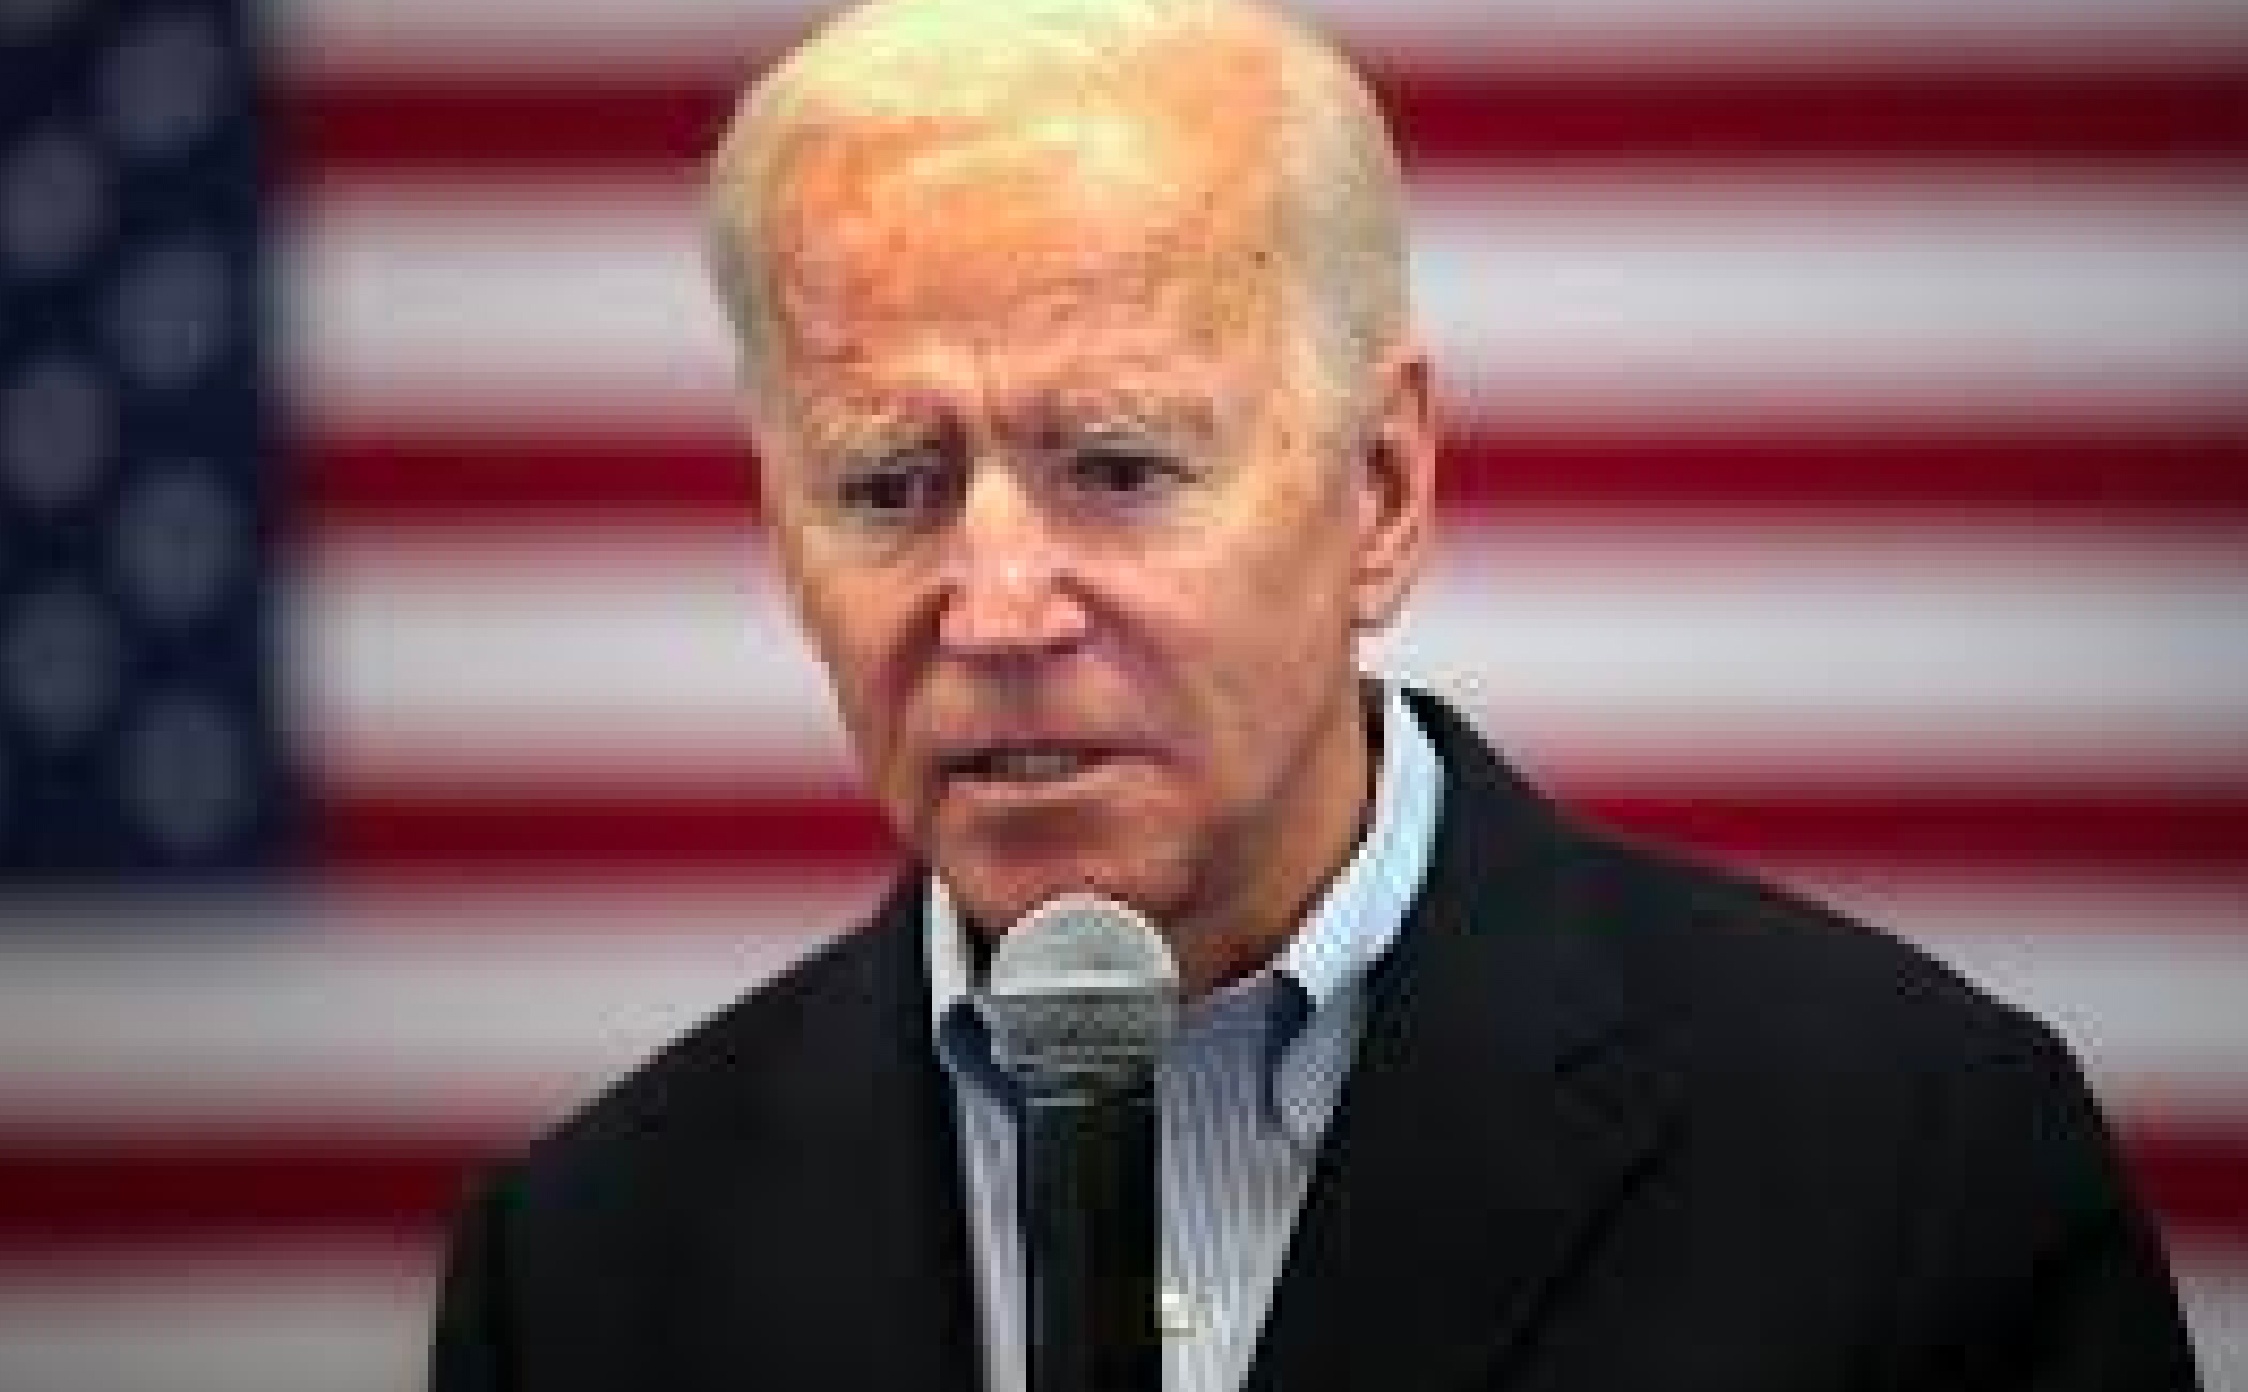 Report: Damning New National Poll on Joe Biden’s “Dementia” Will Send